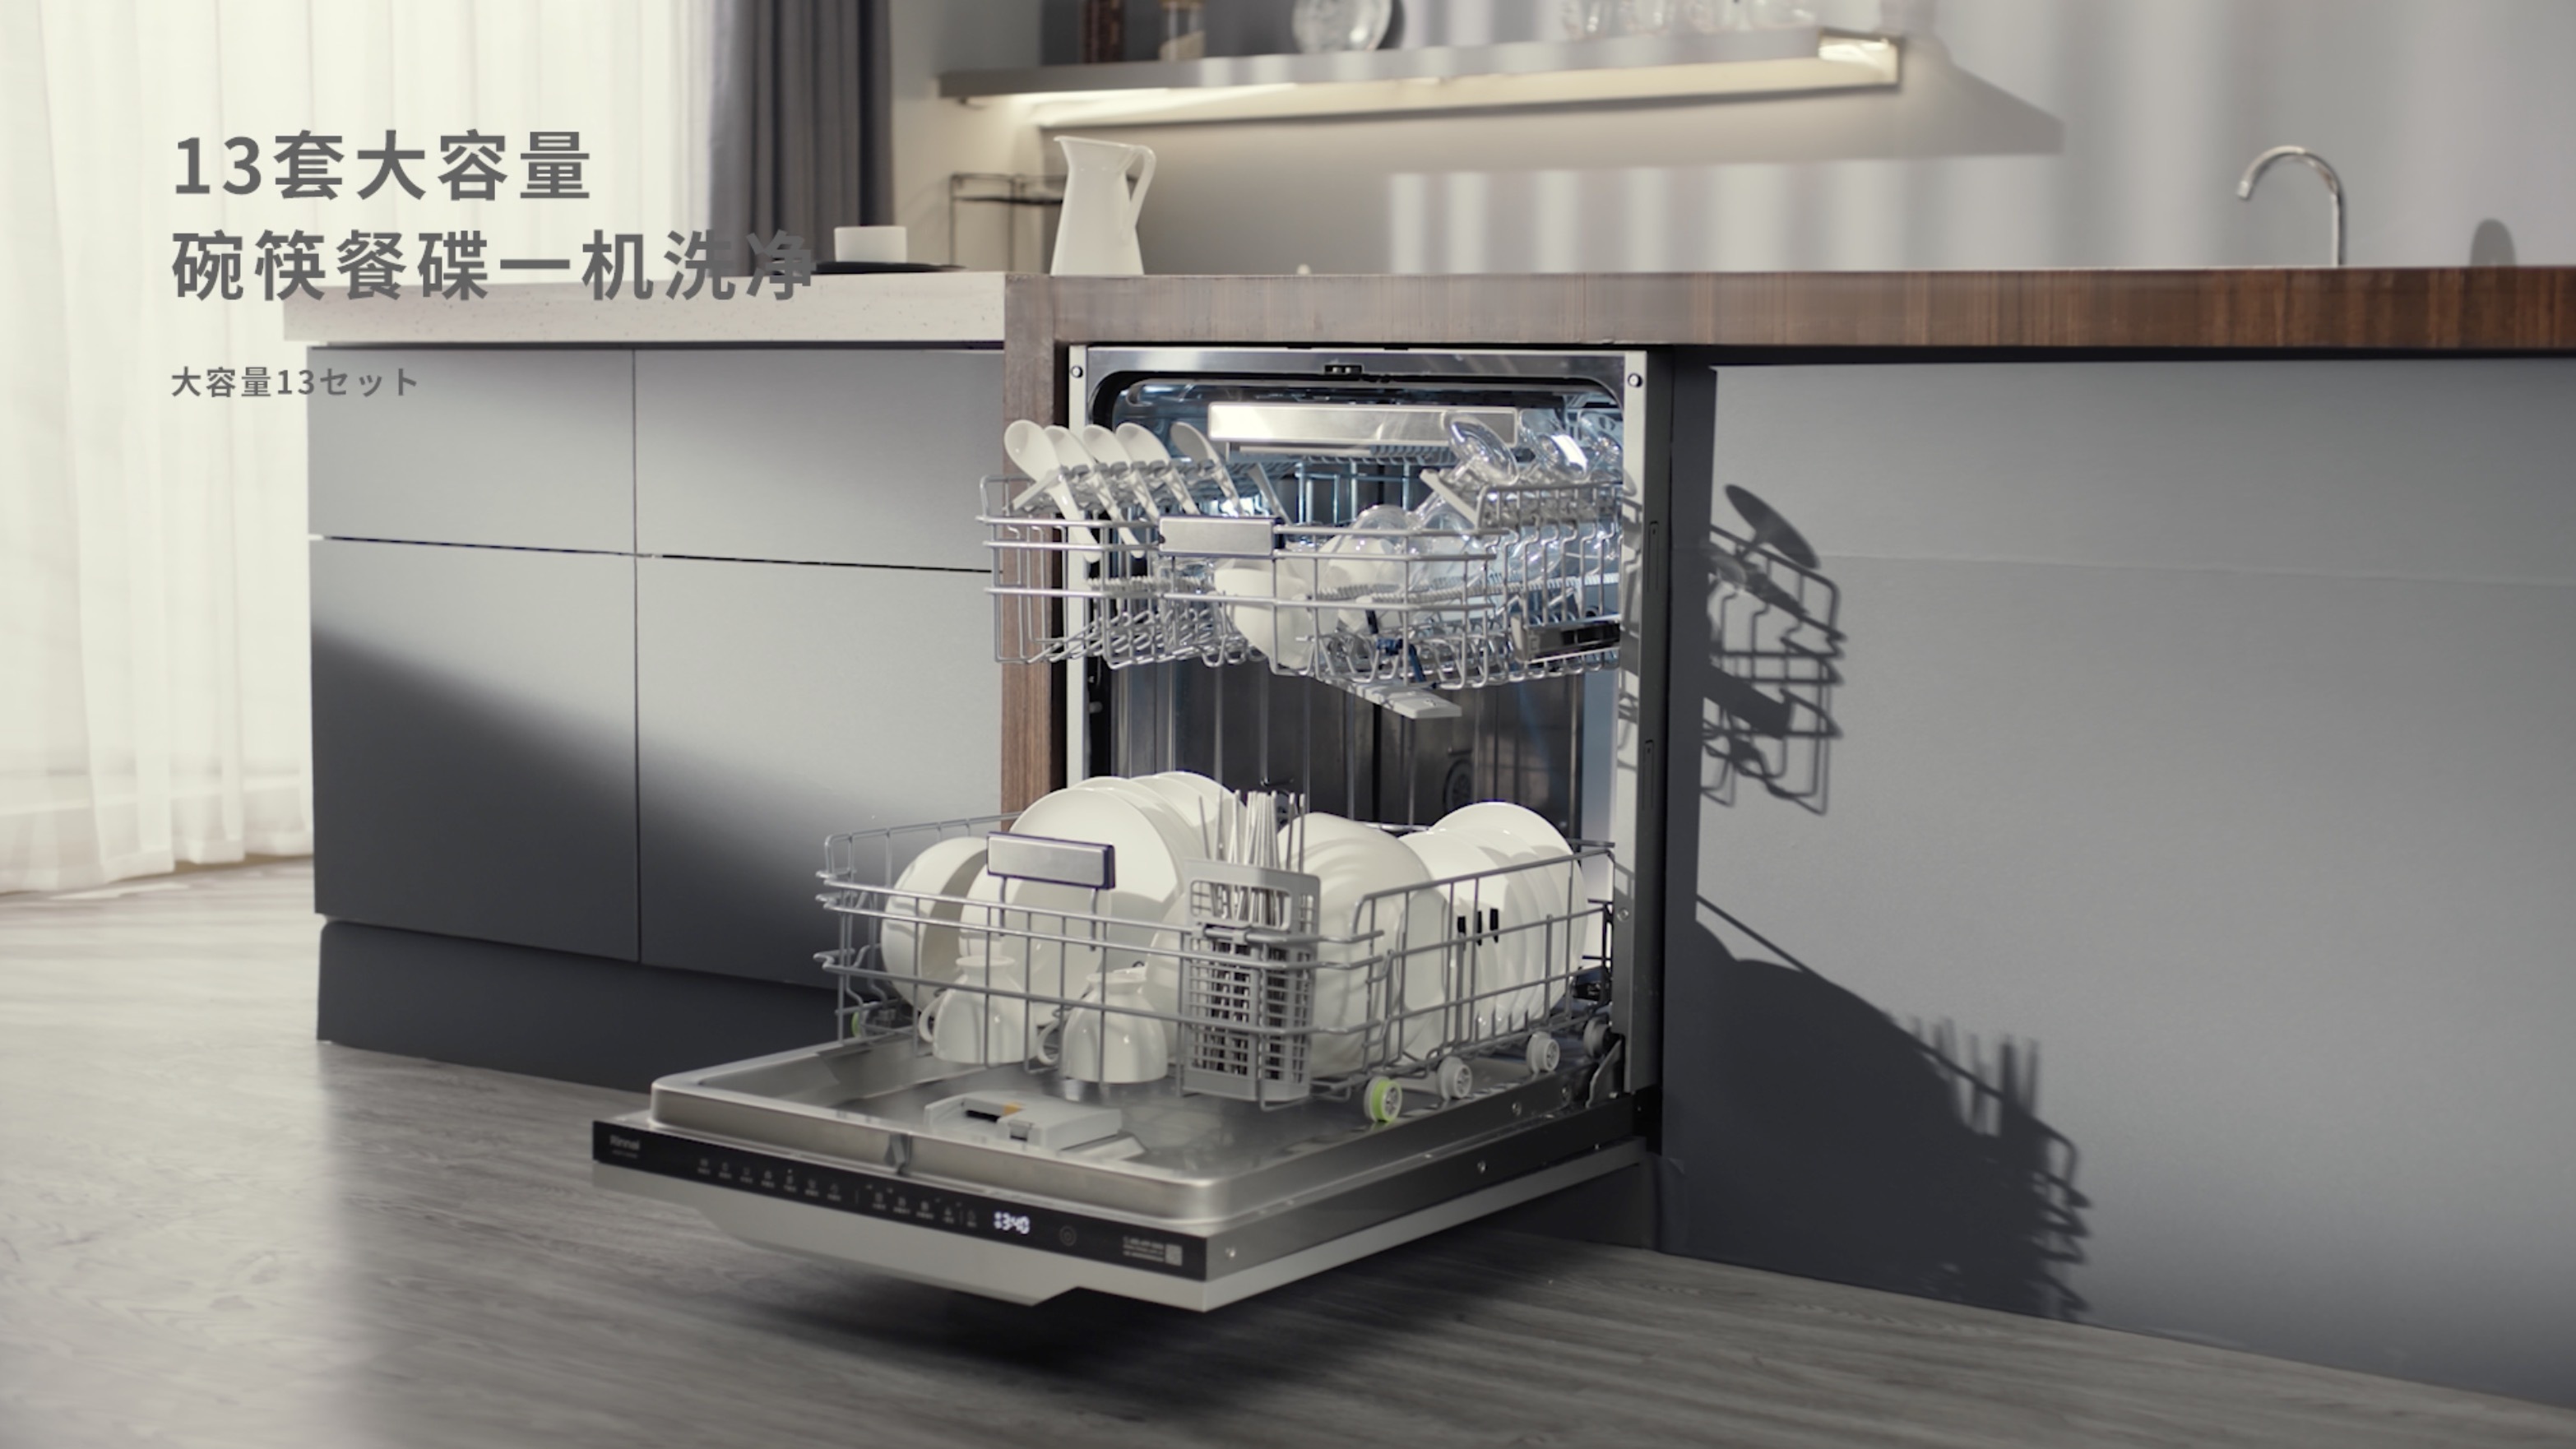 林内乐净系列M5洗碗机——整体厨房新美学